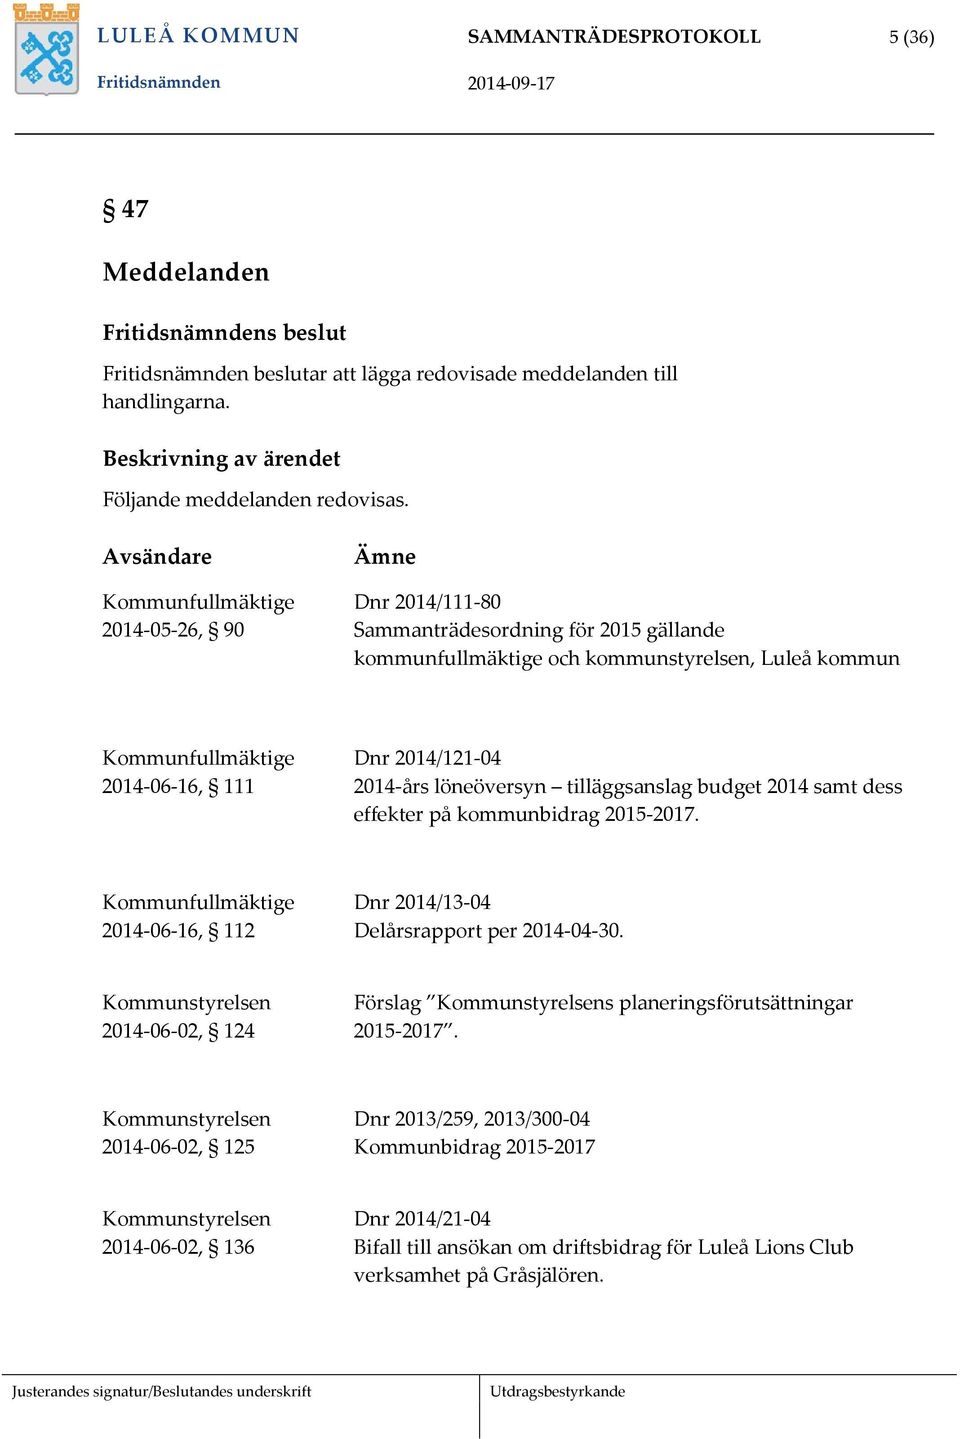 Avsändare Kommunfullmäktige 2014-05-26, 90 Ämne Dnr 2014/111-80 Sammanträdesordning för 2015 gällande kommunfullmäktige och kommunstyrelsen, Luleå kommun Kommunfullmäktige 2014-06-16, 111 Dnr